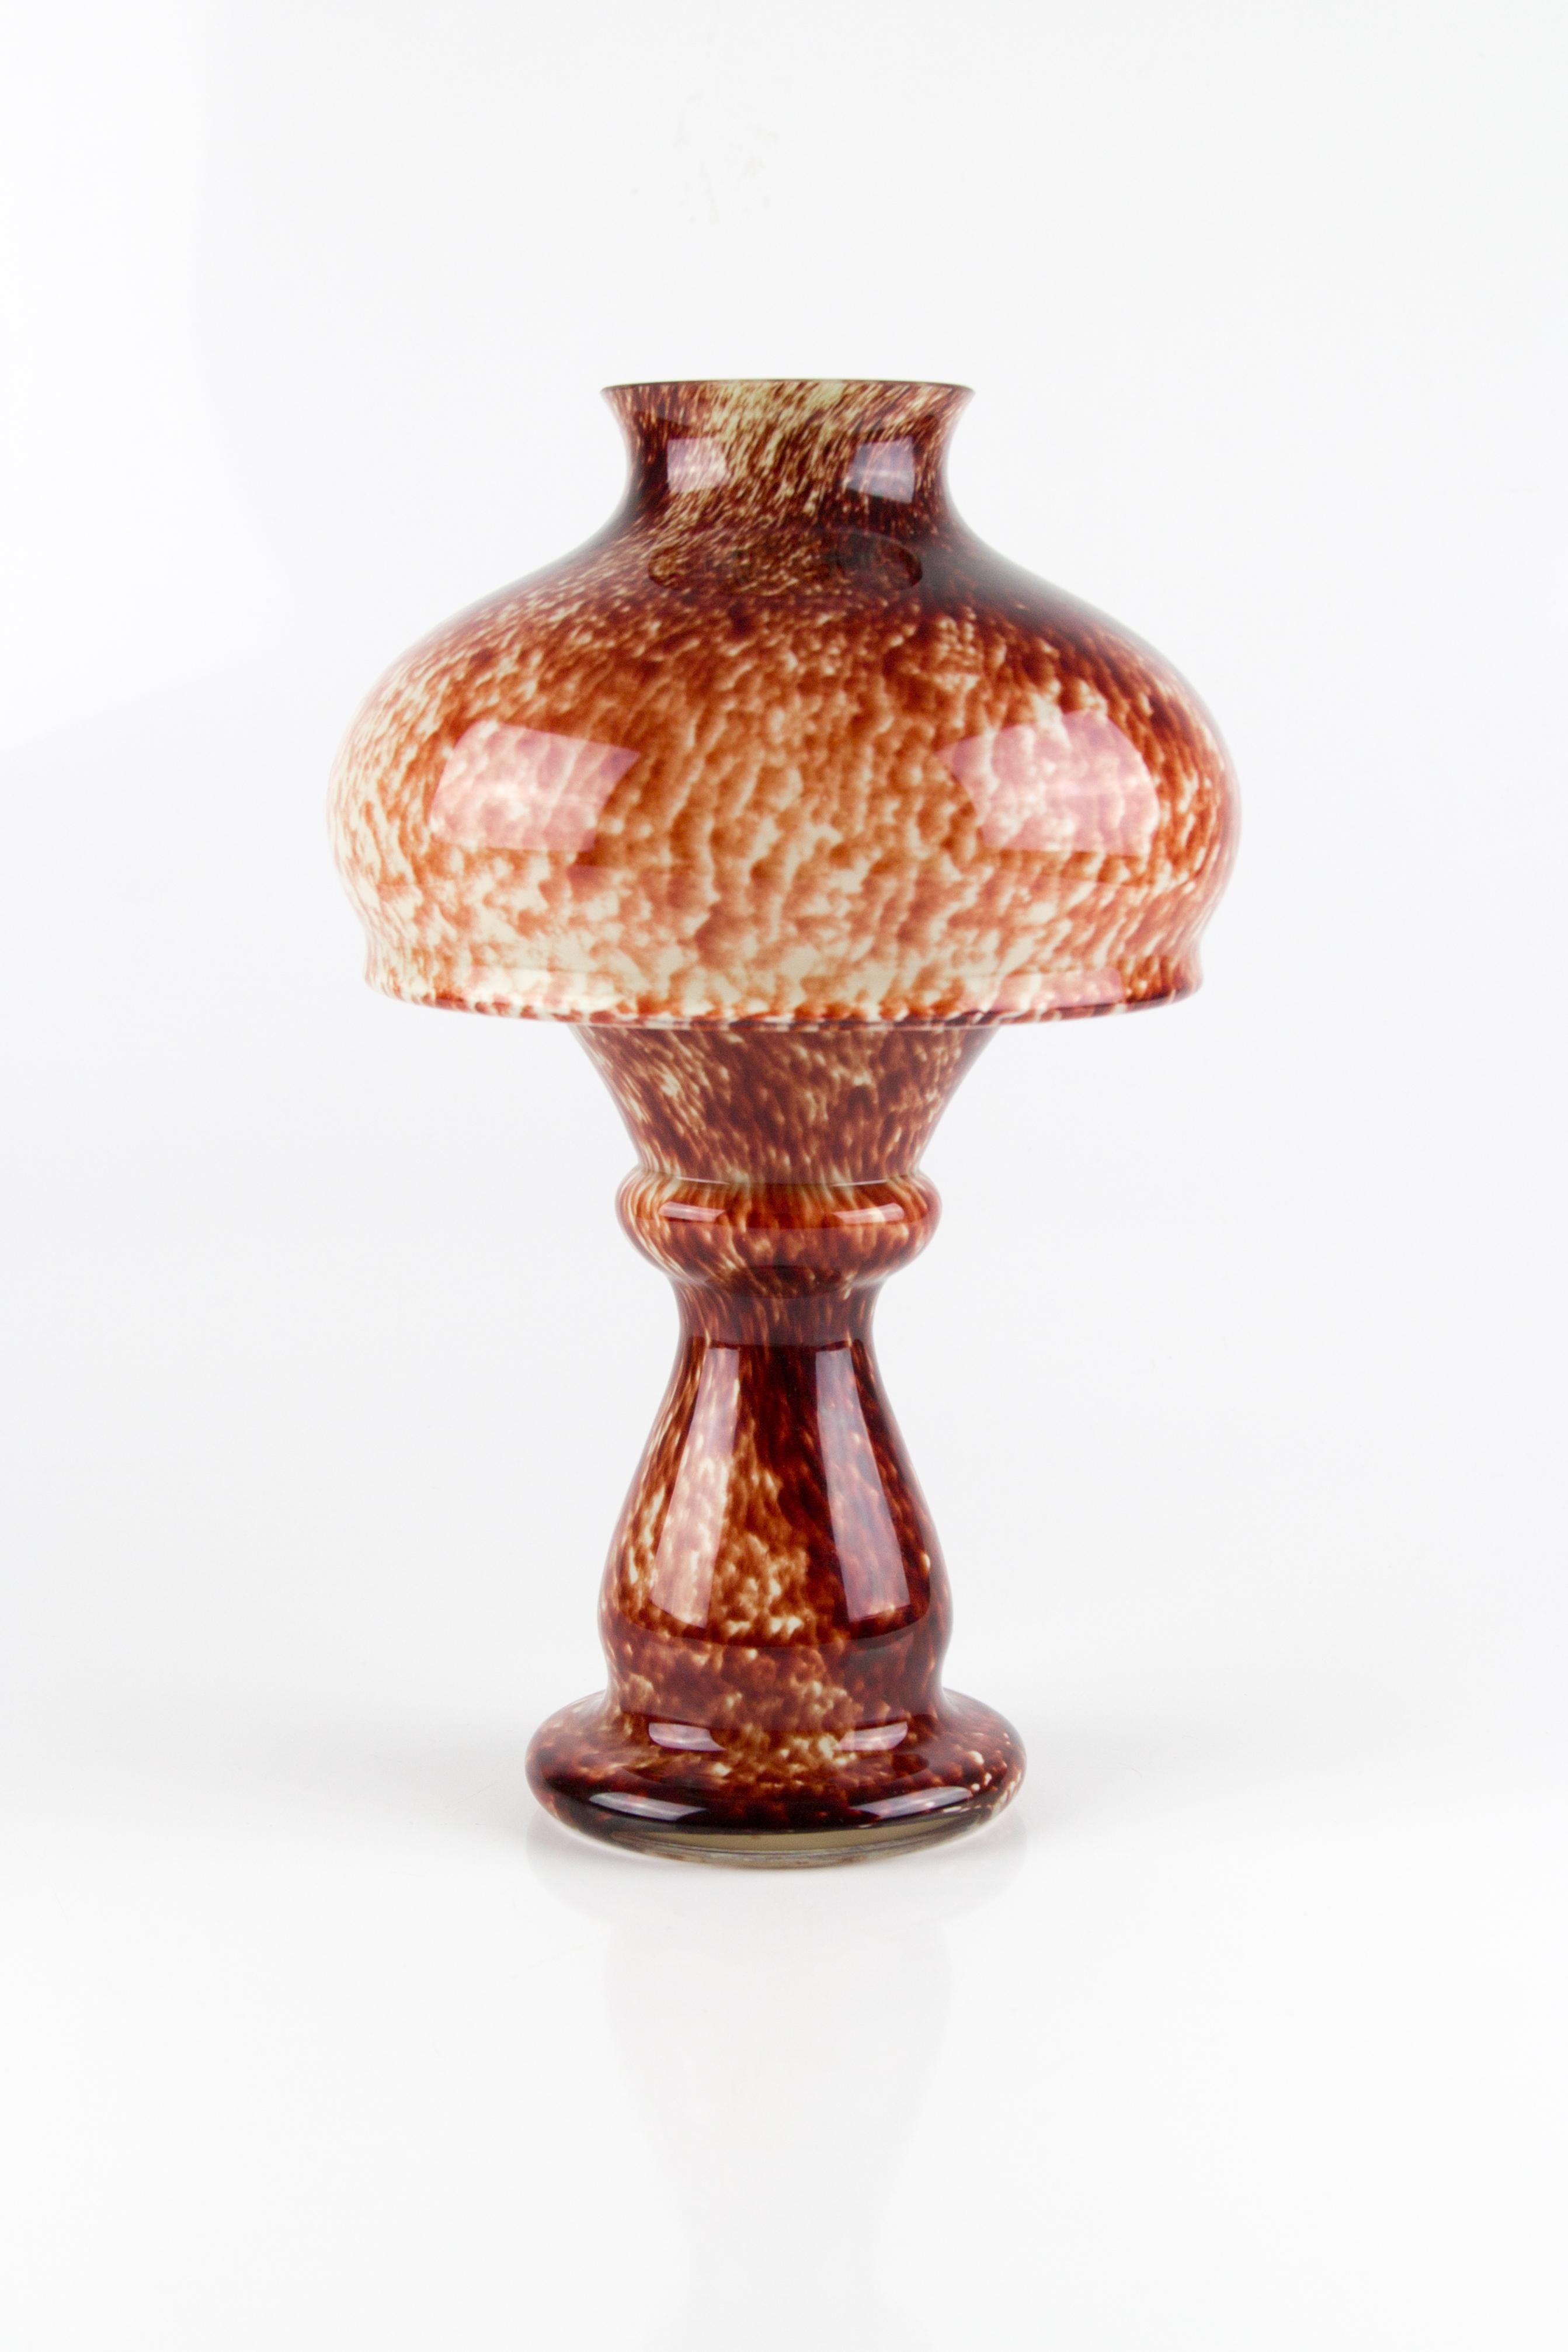 Vintage Mushroom-Shaped Red Art Glass Tea Light Holder or Candle Lamp or Vase For Sale 2